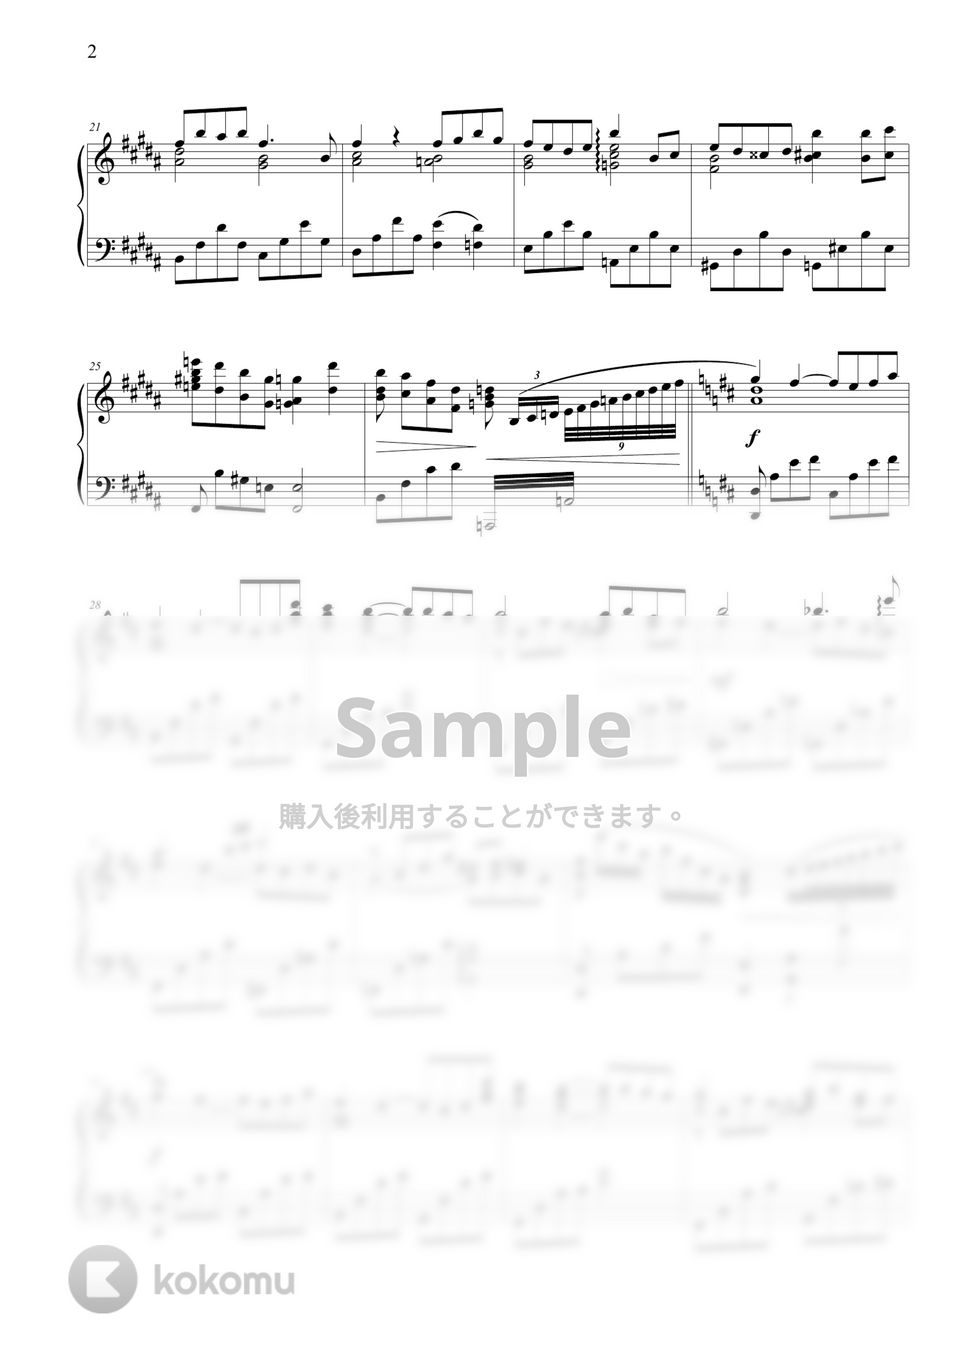 大島 ミチル - Kazabue by THIS IS PIANO